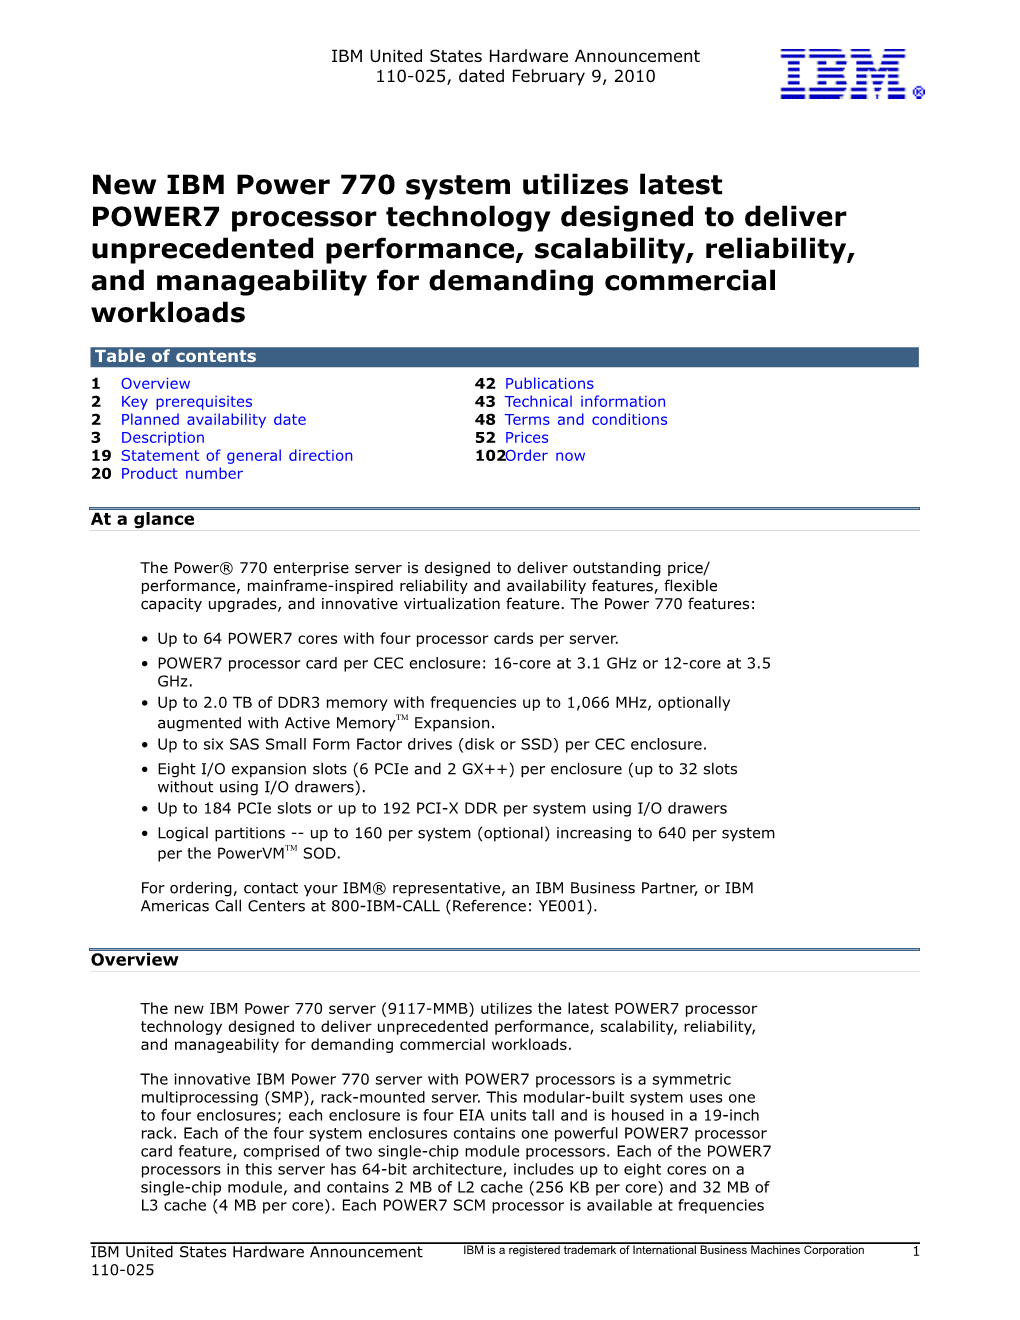 New IBM Power 770 System Utilizes Latest POWER7 Processor